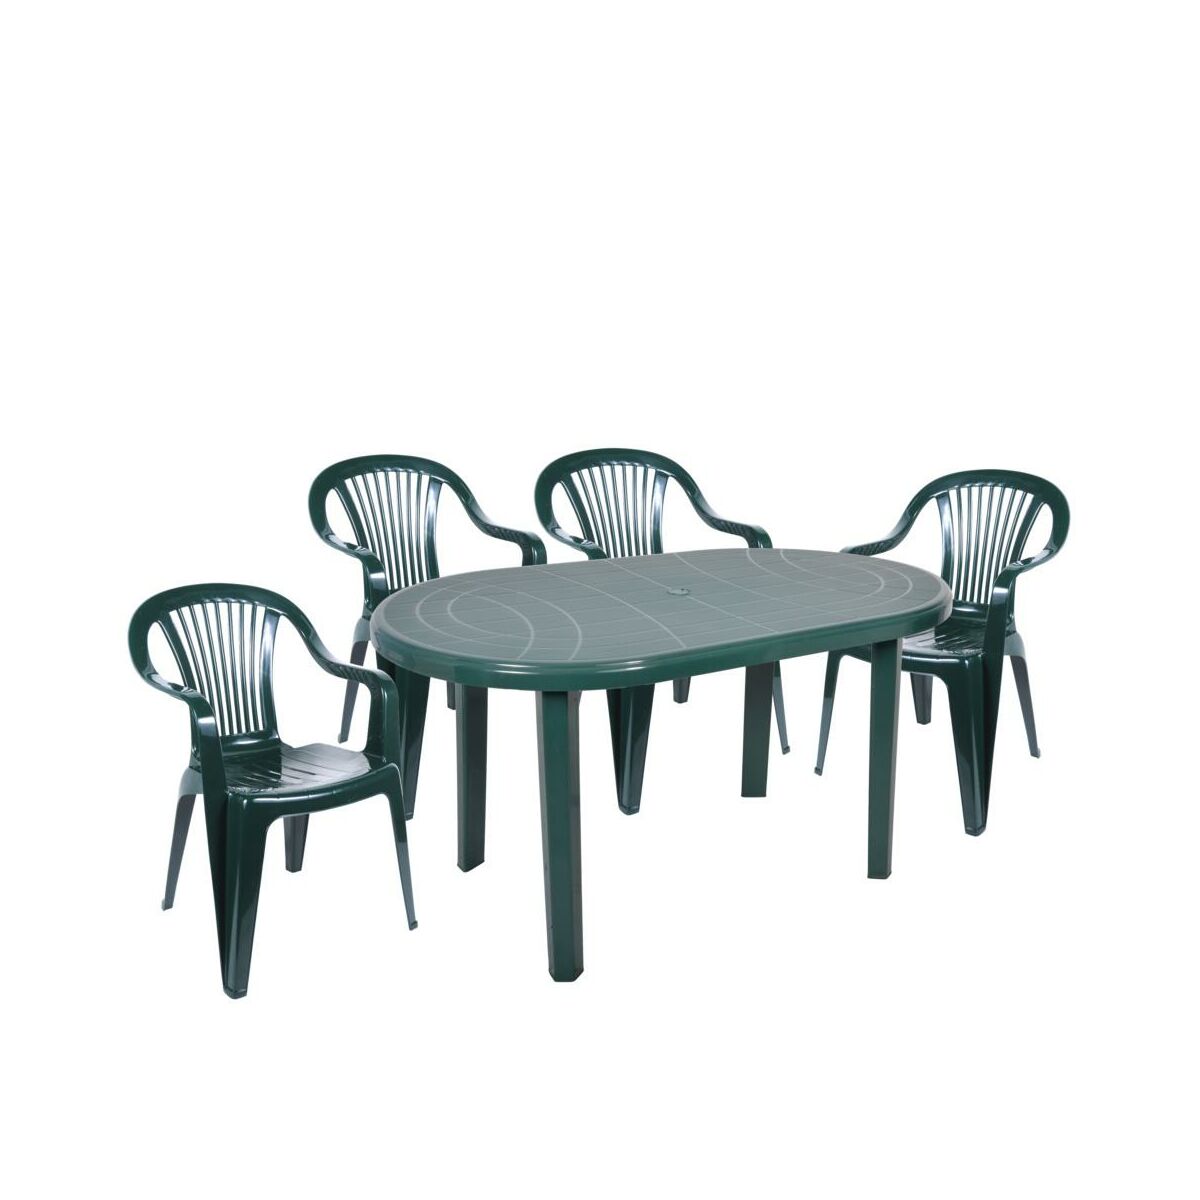 Krzeslo Ogrodowe Beryl Plastikowe Zielone Krzesla Fotele Lawki Ogrodowe W Atrakcyjnej Cenie W Sklepach Leroy Merlin